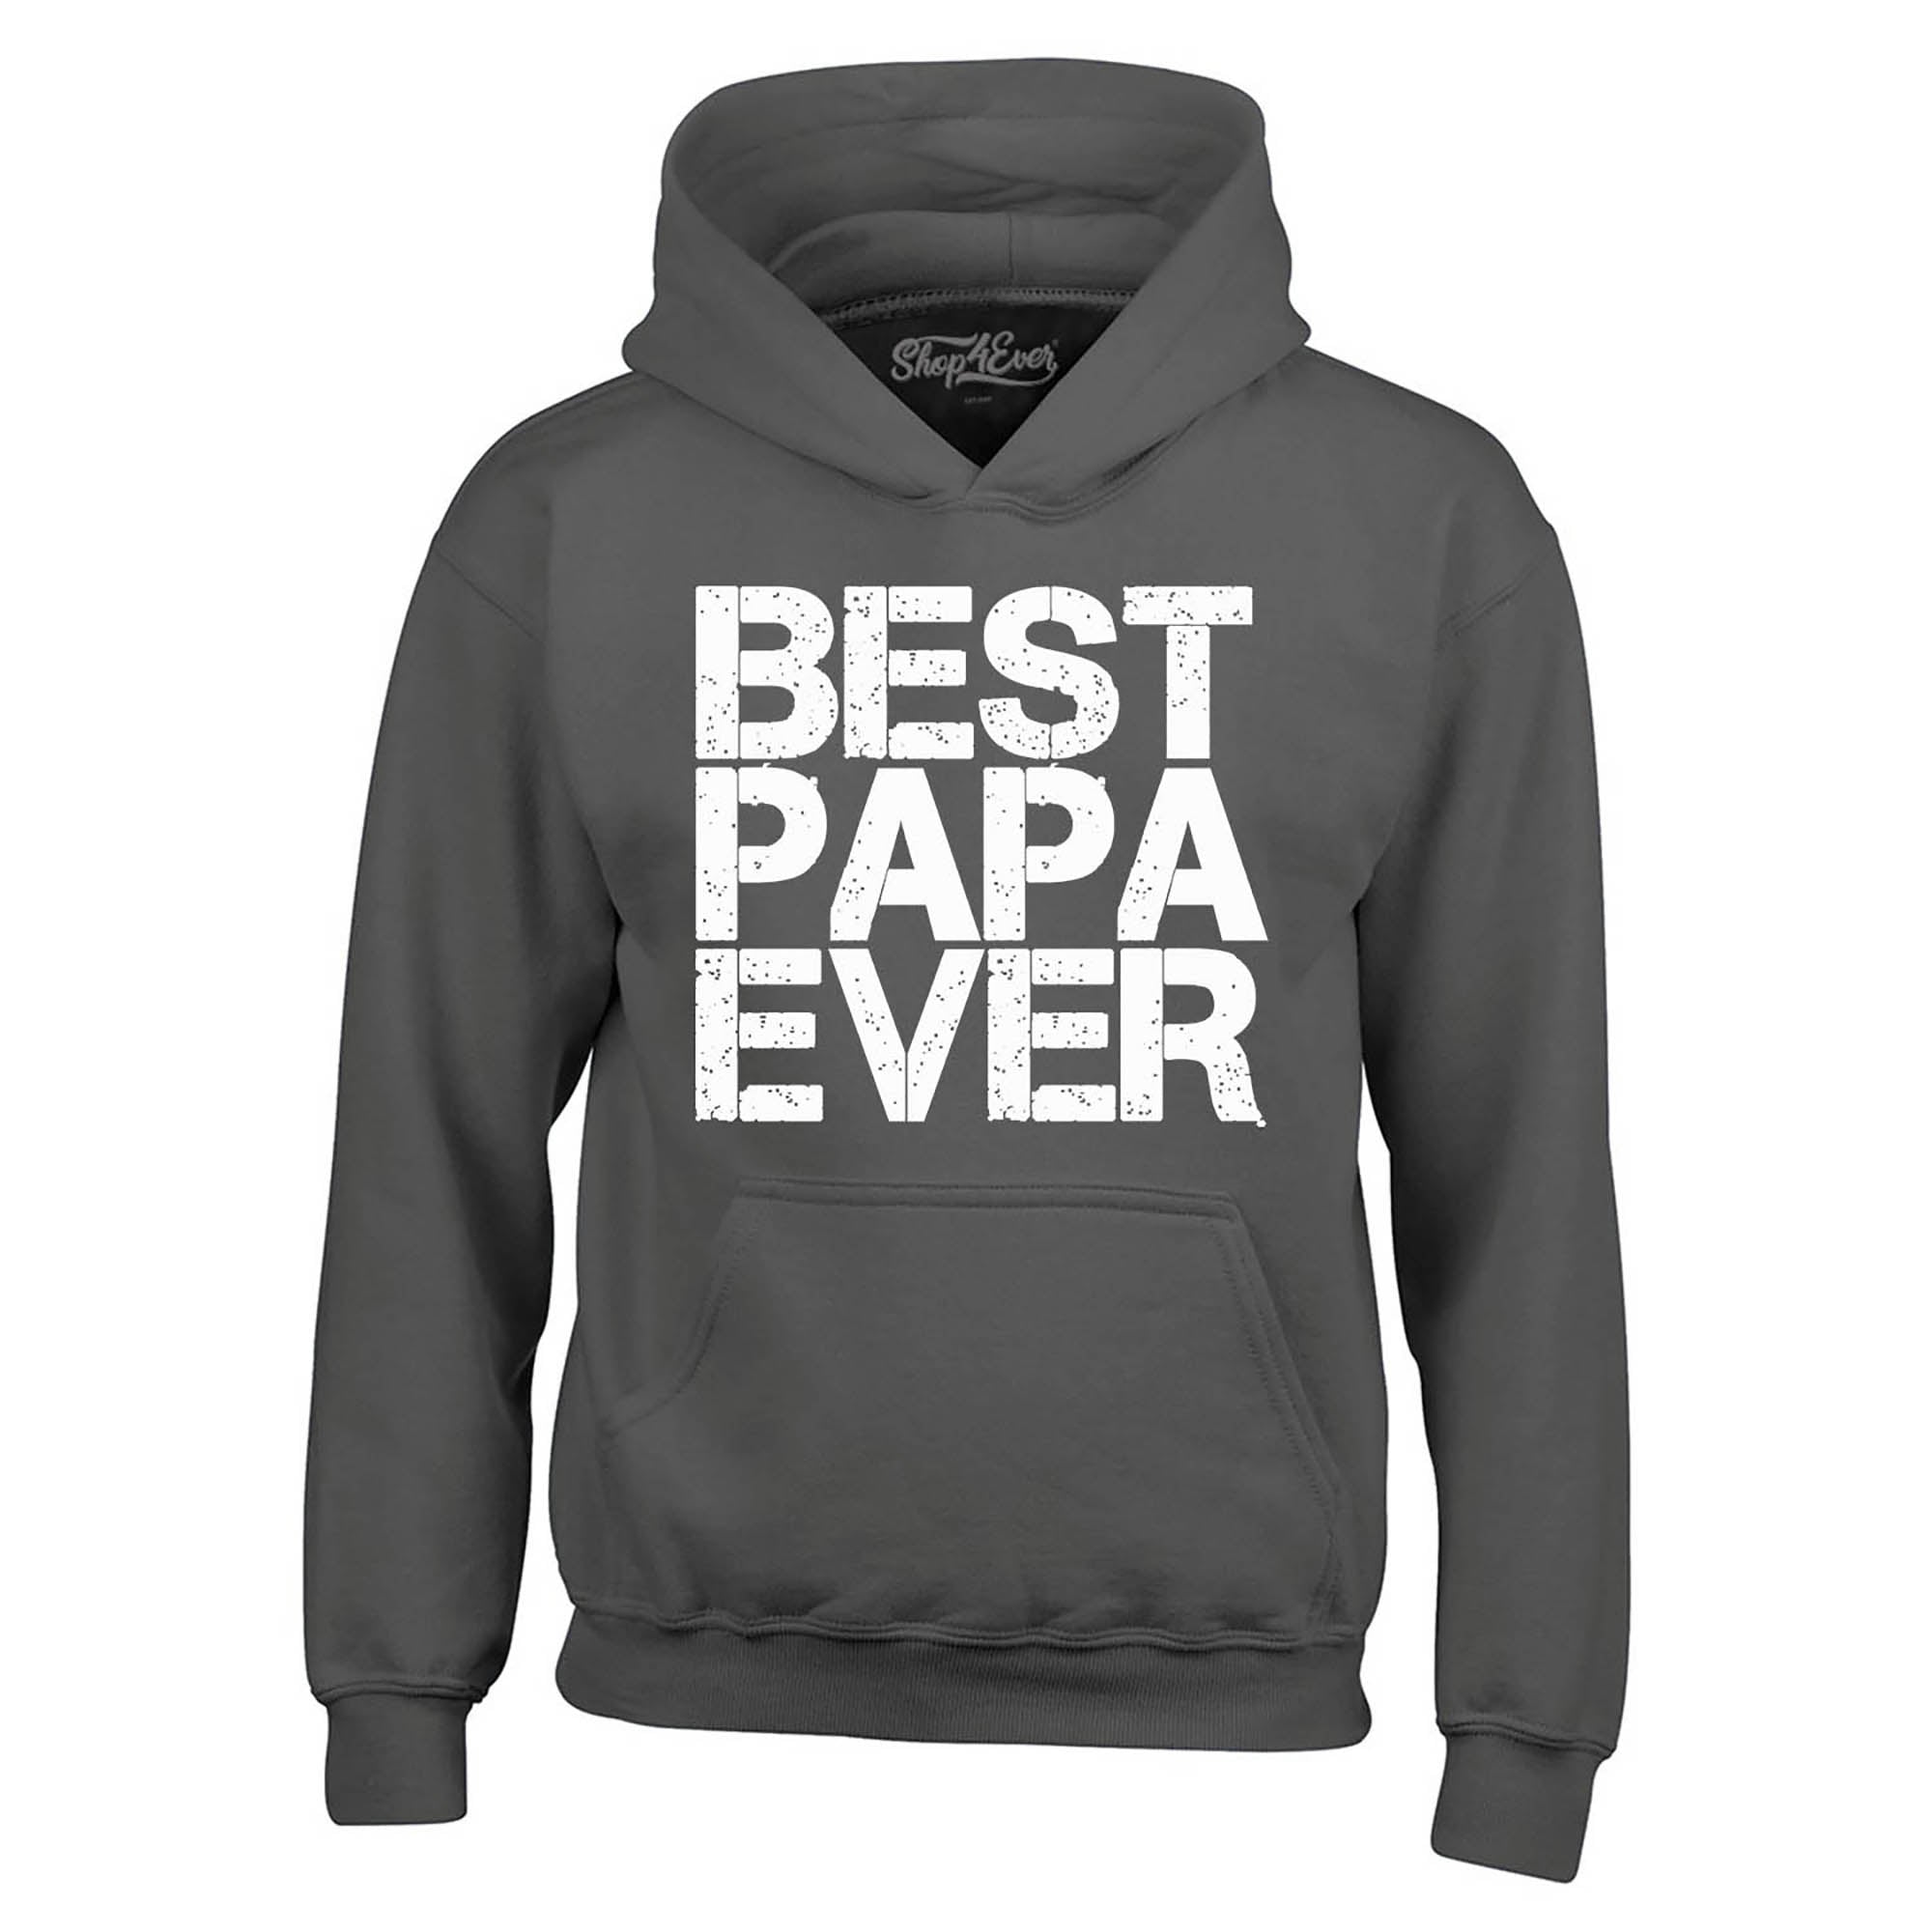 Best Papa Ever Hoodies Sweatshirts